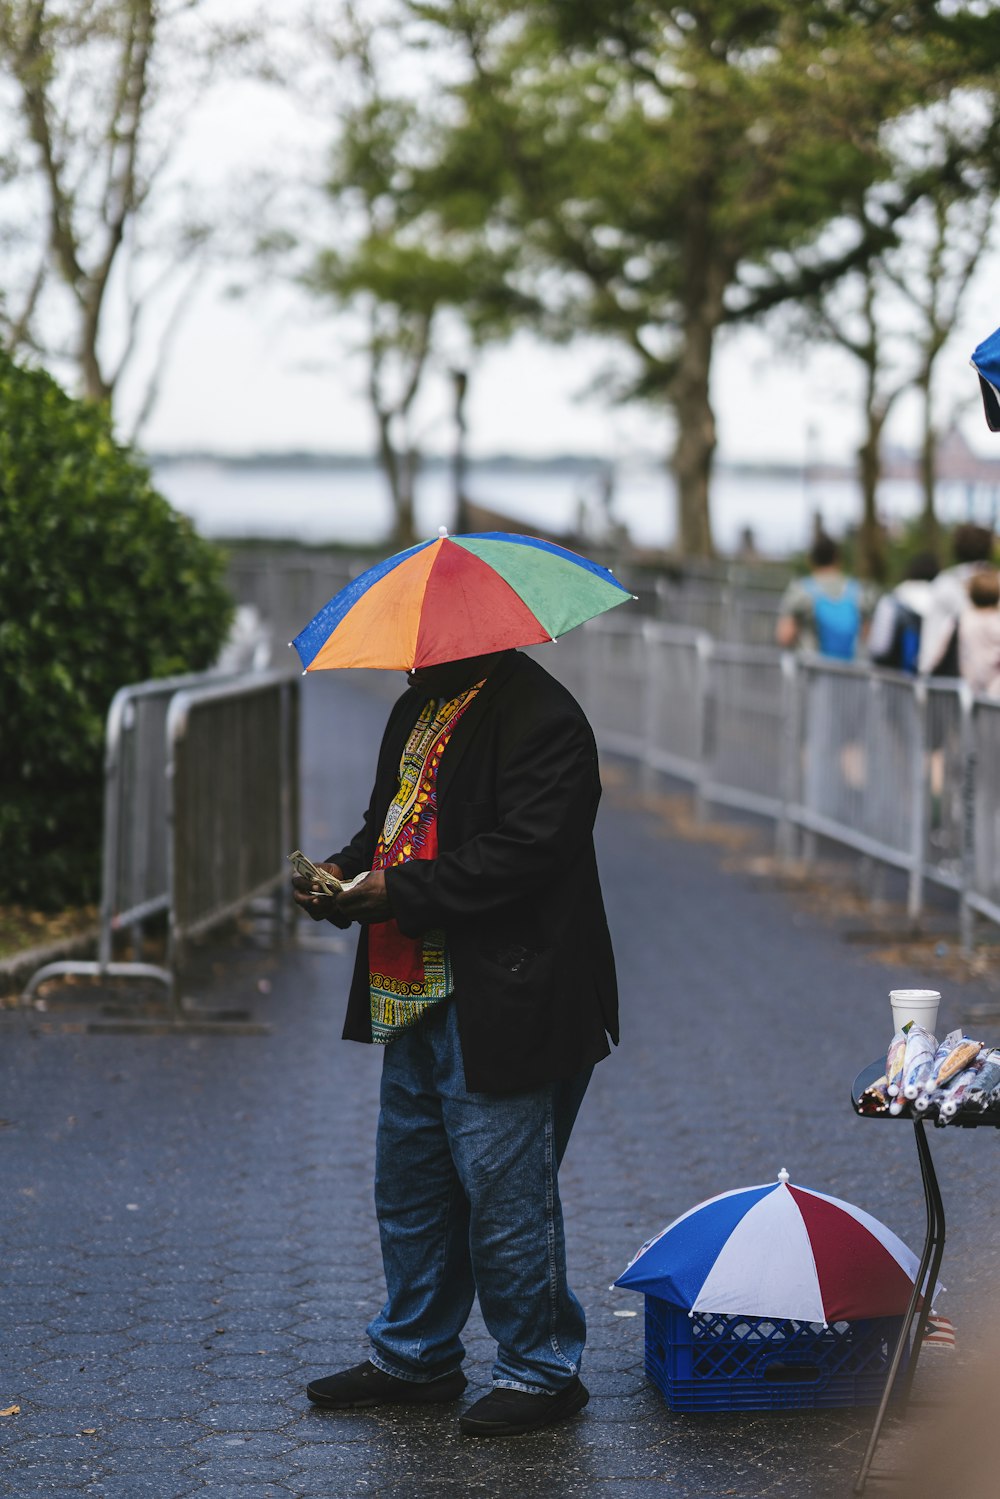 homme avec un parapluie multicolore debout sur le sentier et d’autres personnes marchant pendant la journée